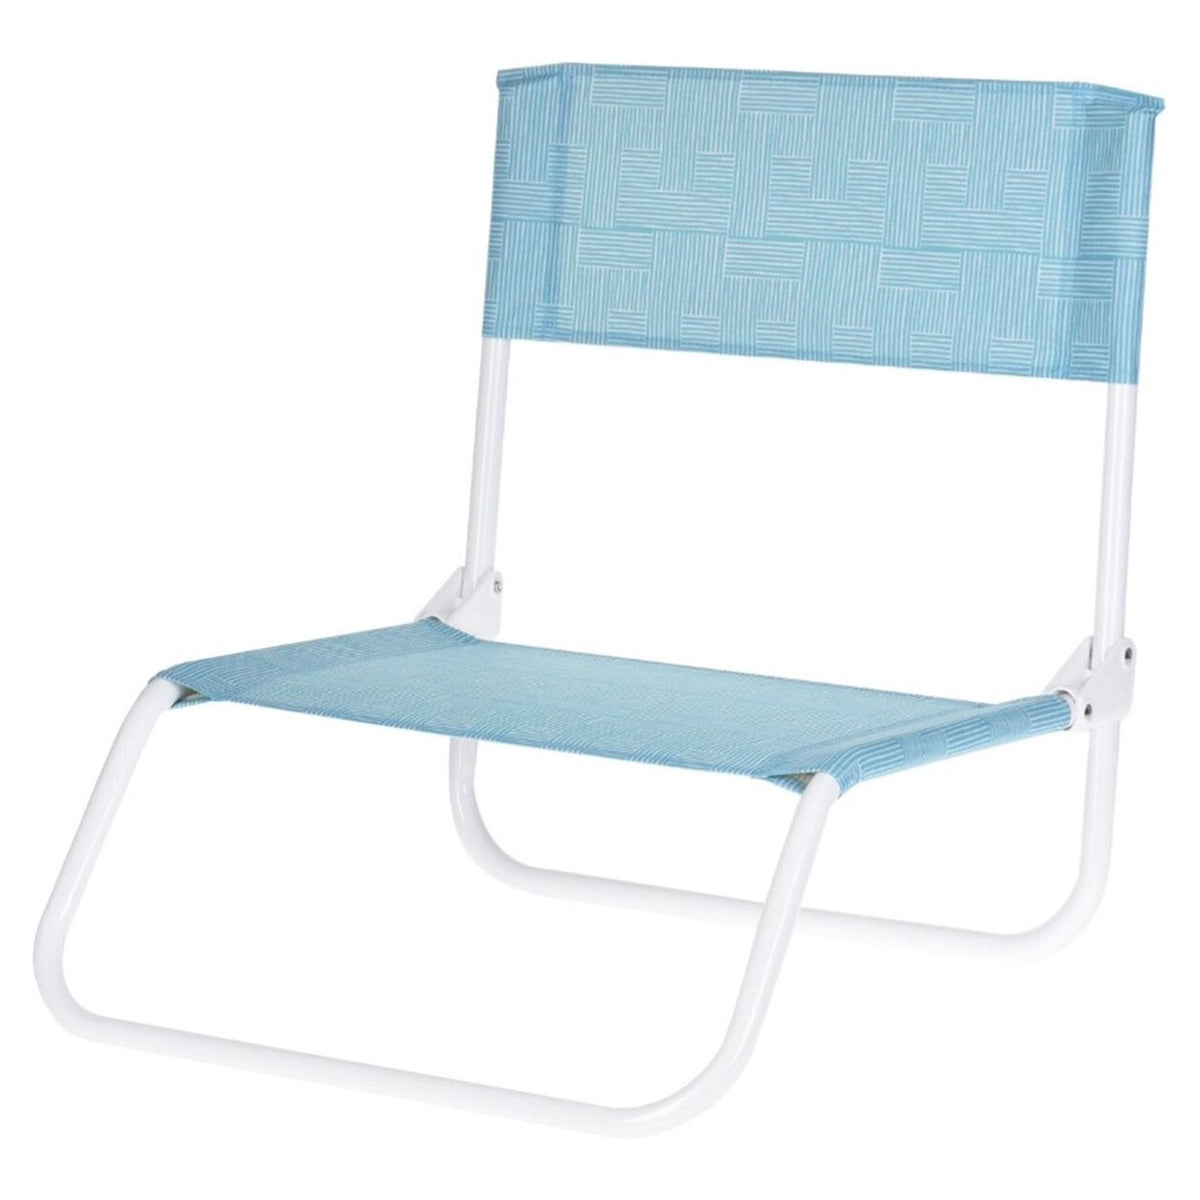 Floor Foldable Beach Chair , Light Green Color